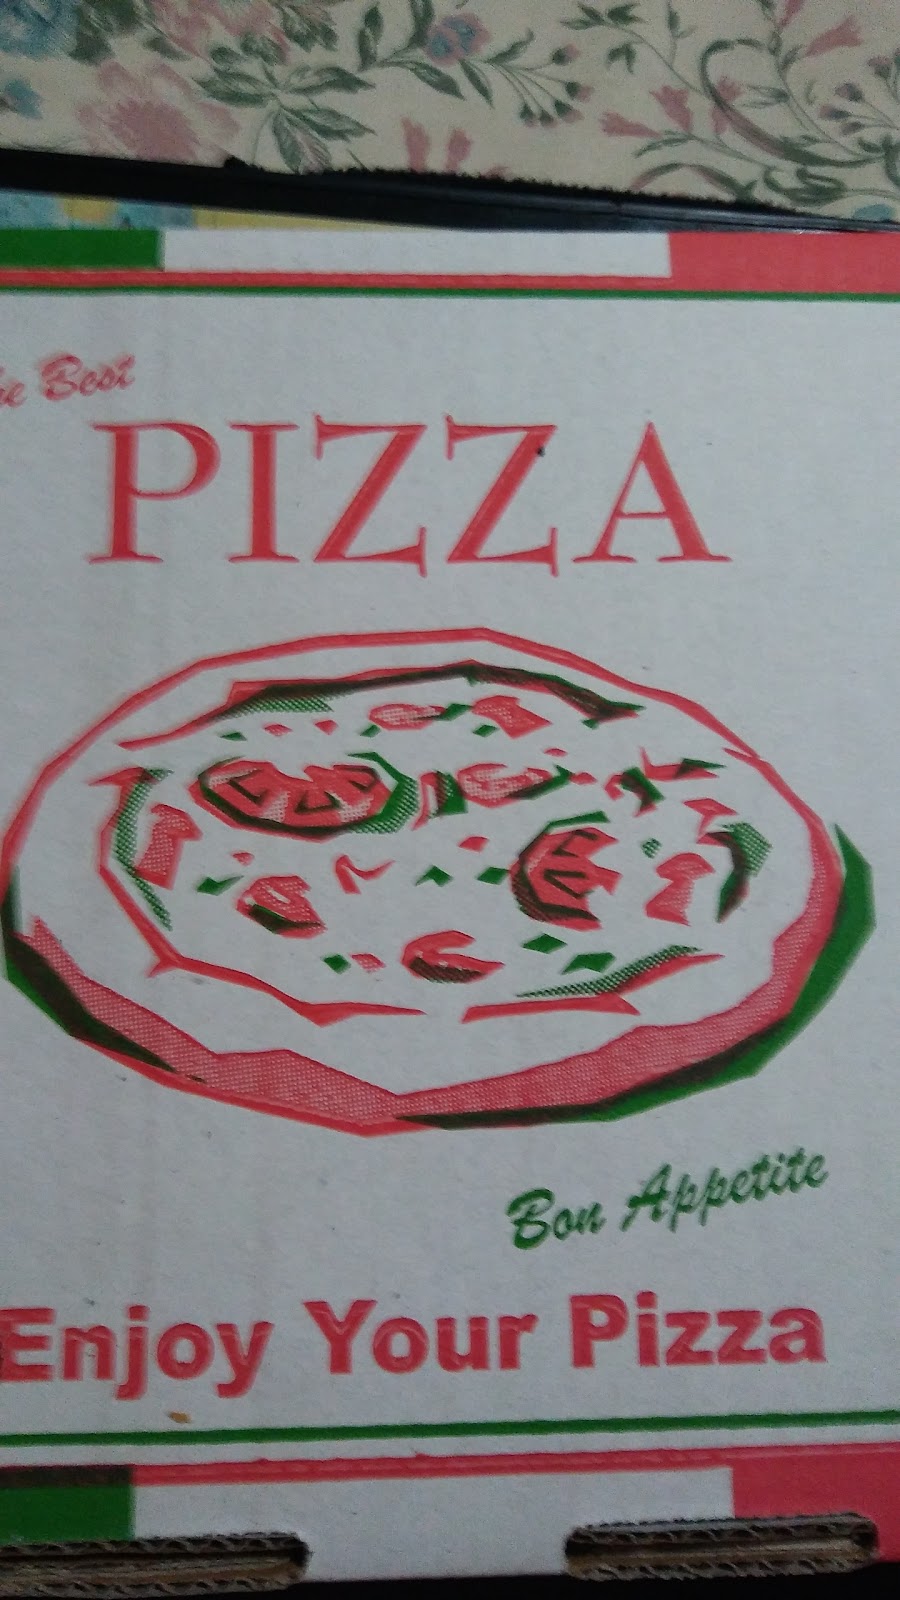 Alchester Square Pasta Pizza - Boronia | 3/30-32 Alchester Cres, Boronia VIC 3155, Australia | Phone: (03) 9761 1008